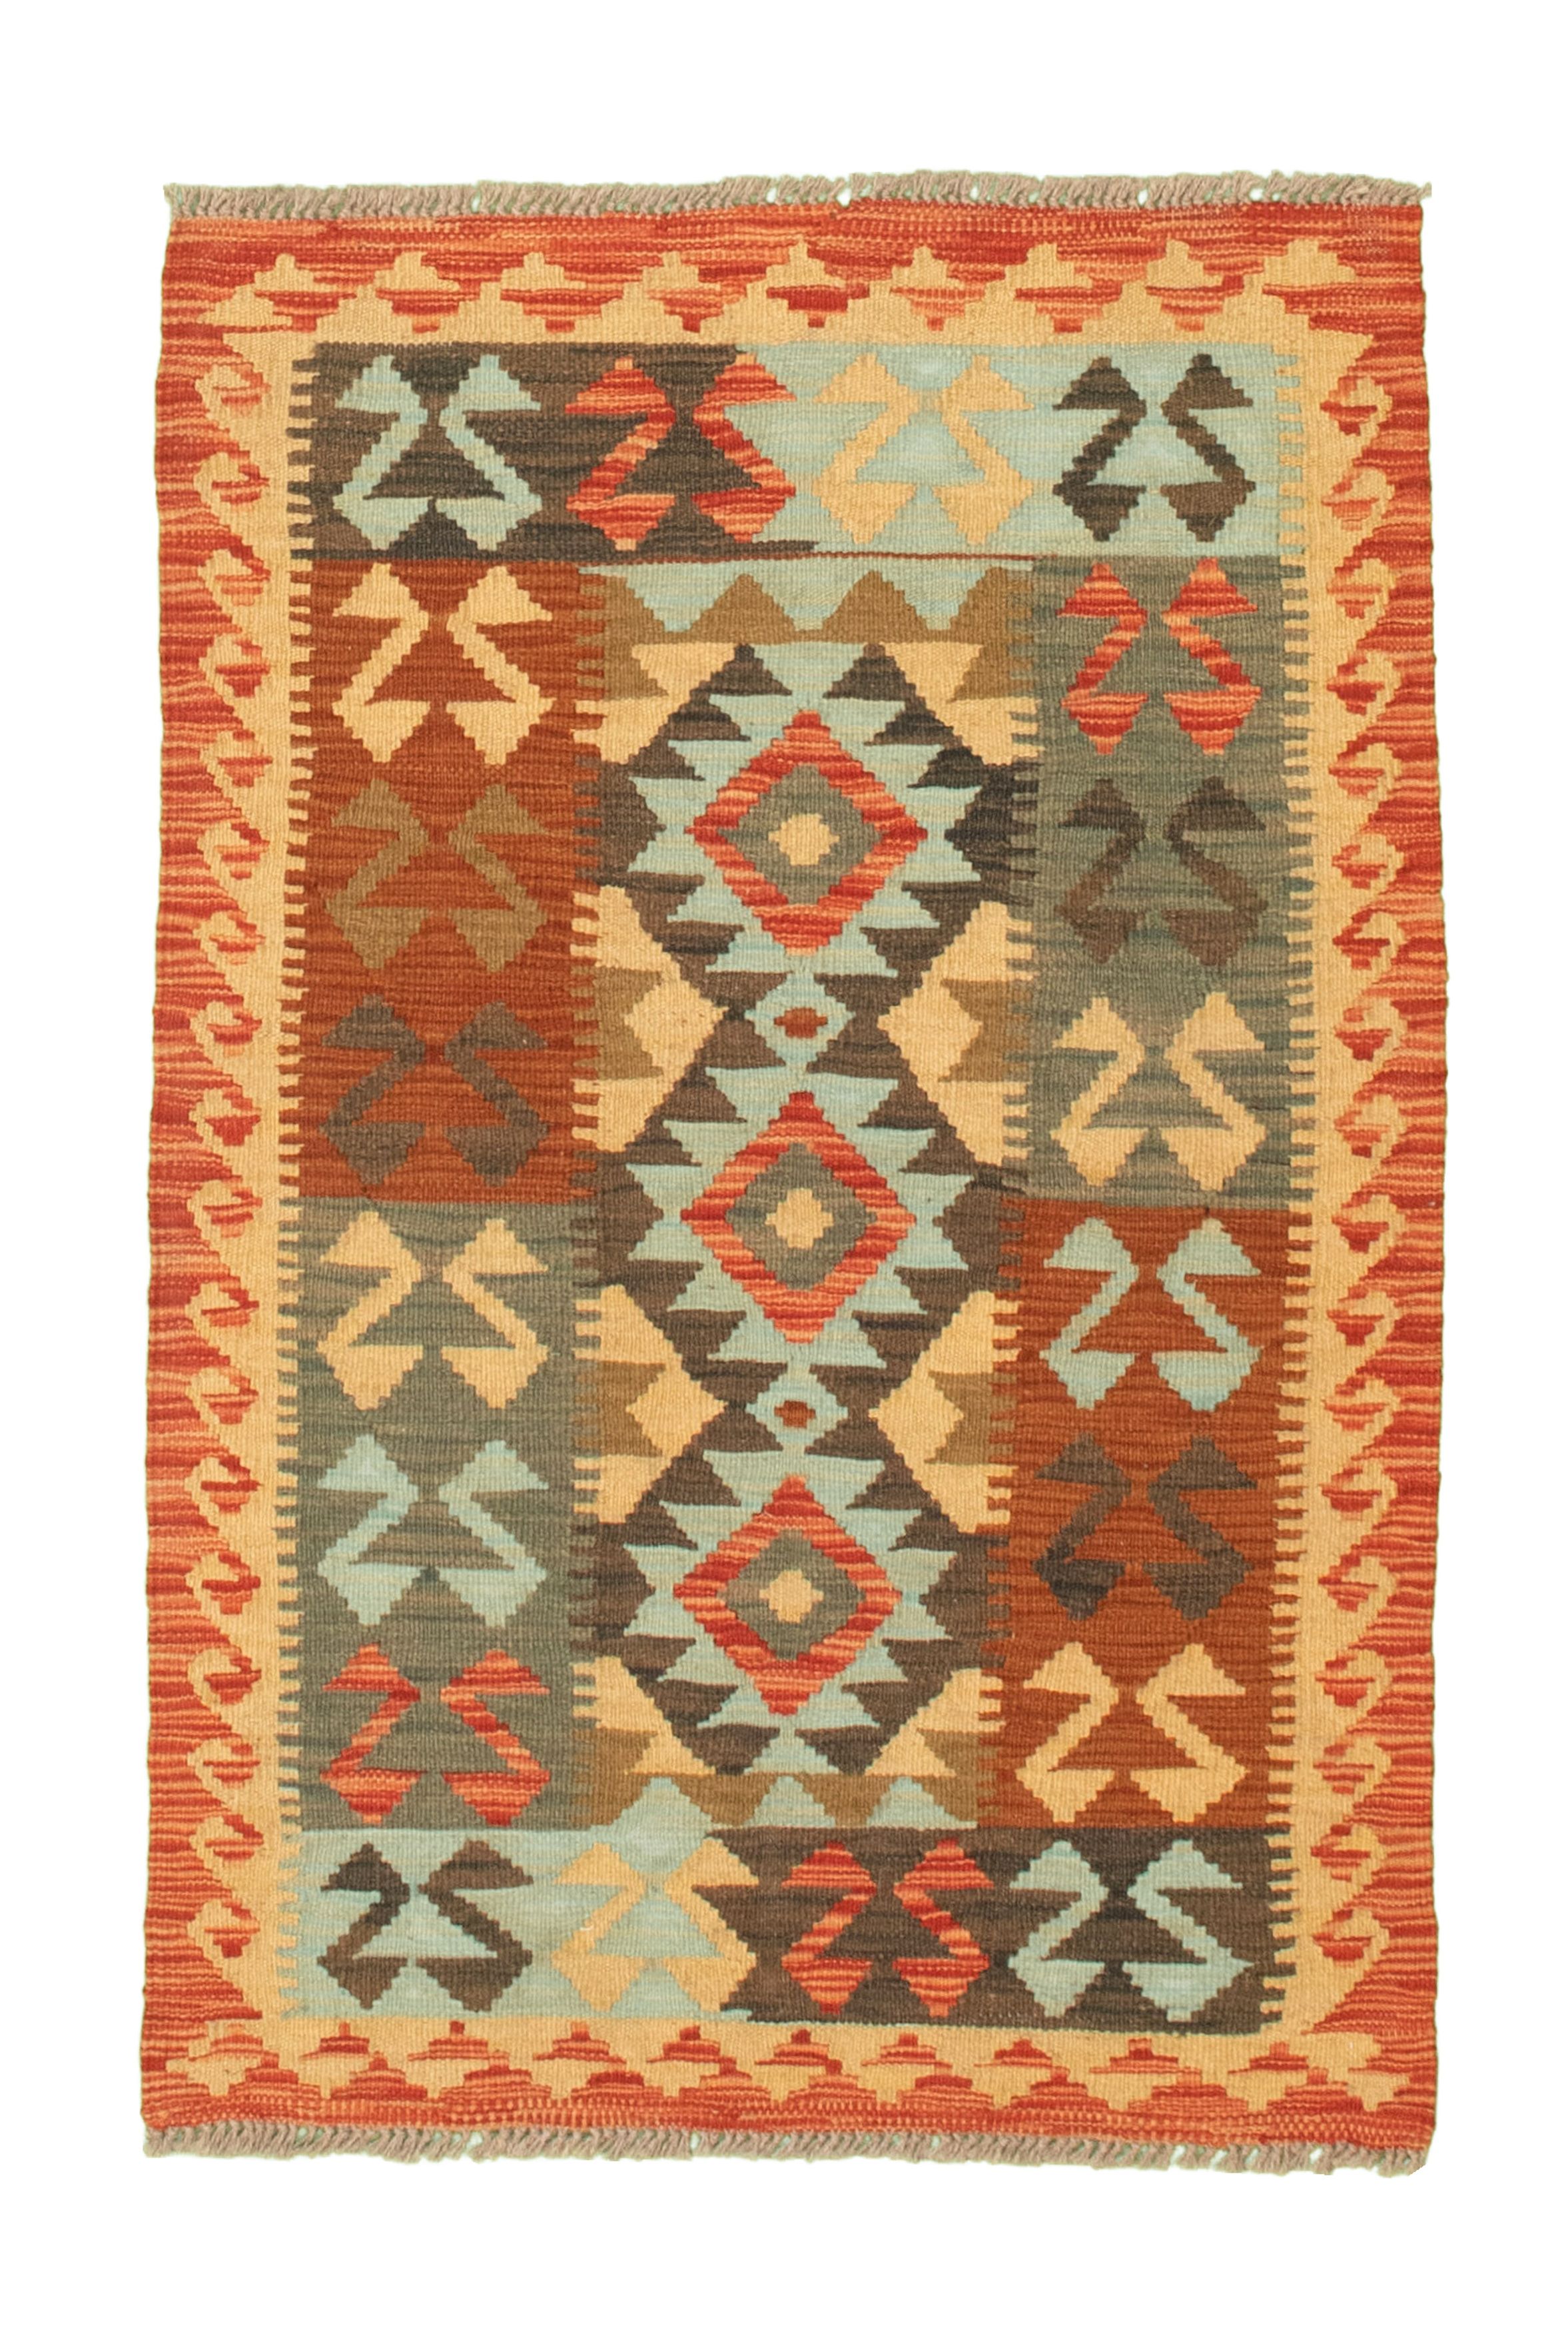 Hand woven Kashkoli FW Brown, Copper, Ivory, Turquoise Cotton Kilim 2'8" x 4'1" Size: 2'8" x 4'1"  